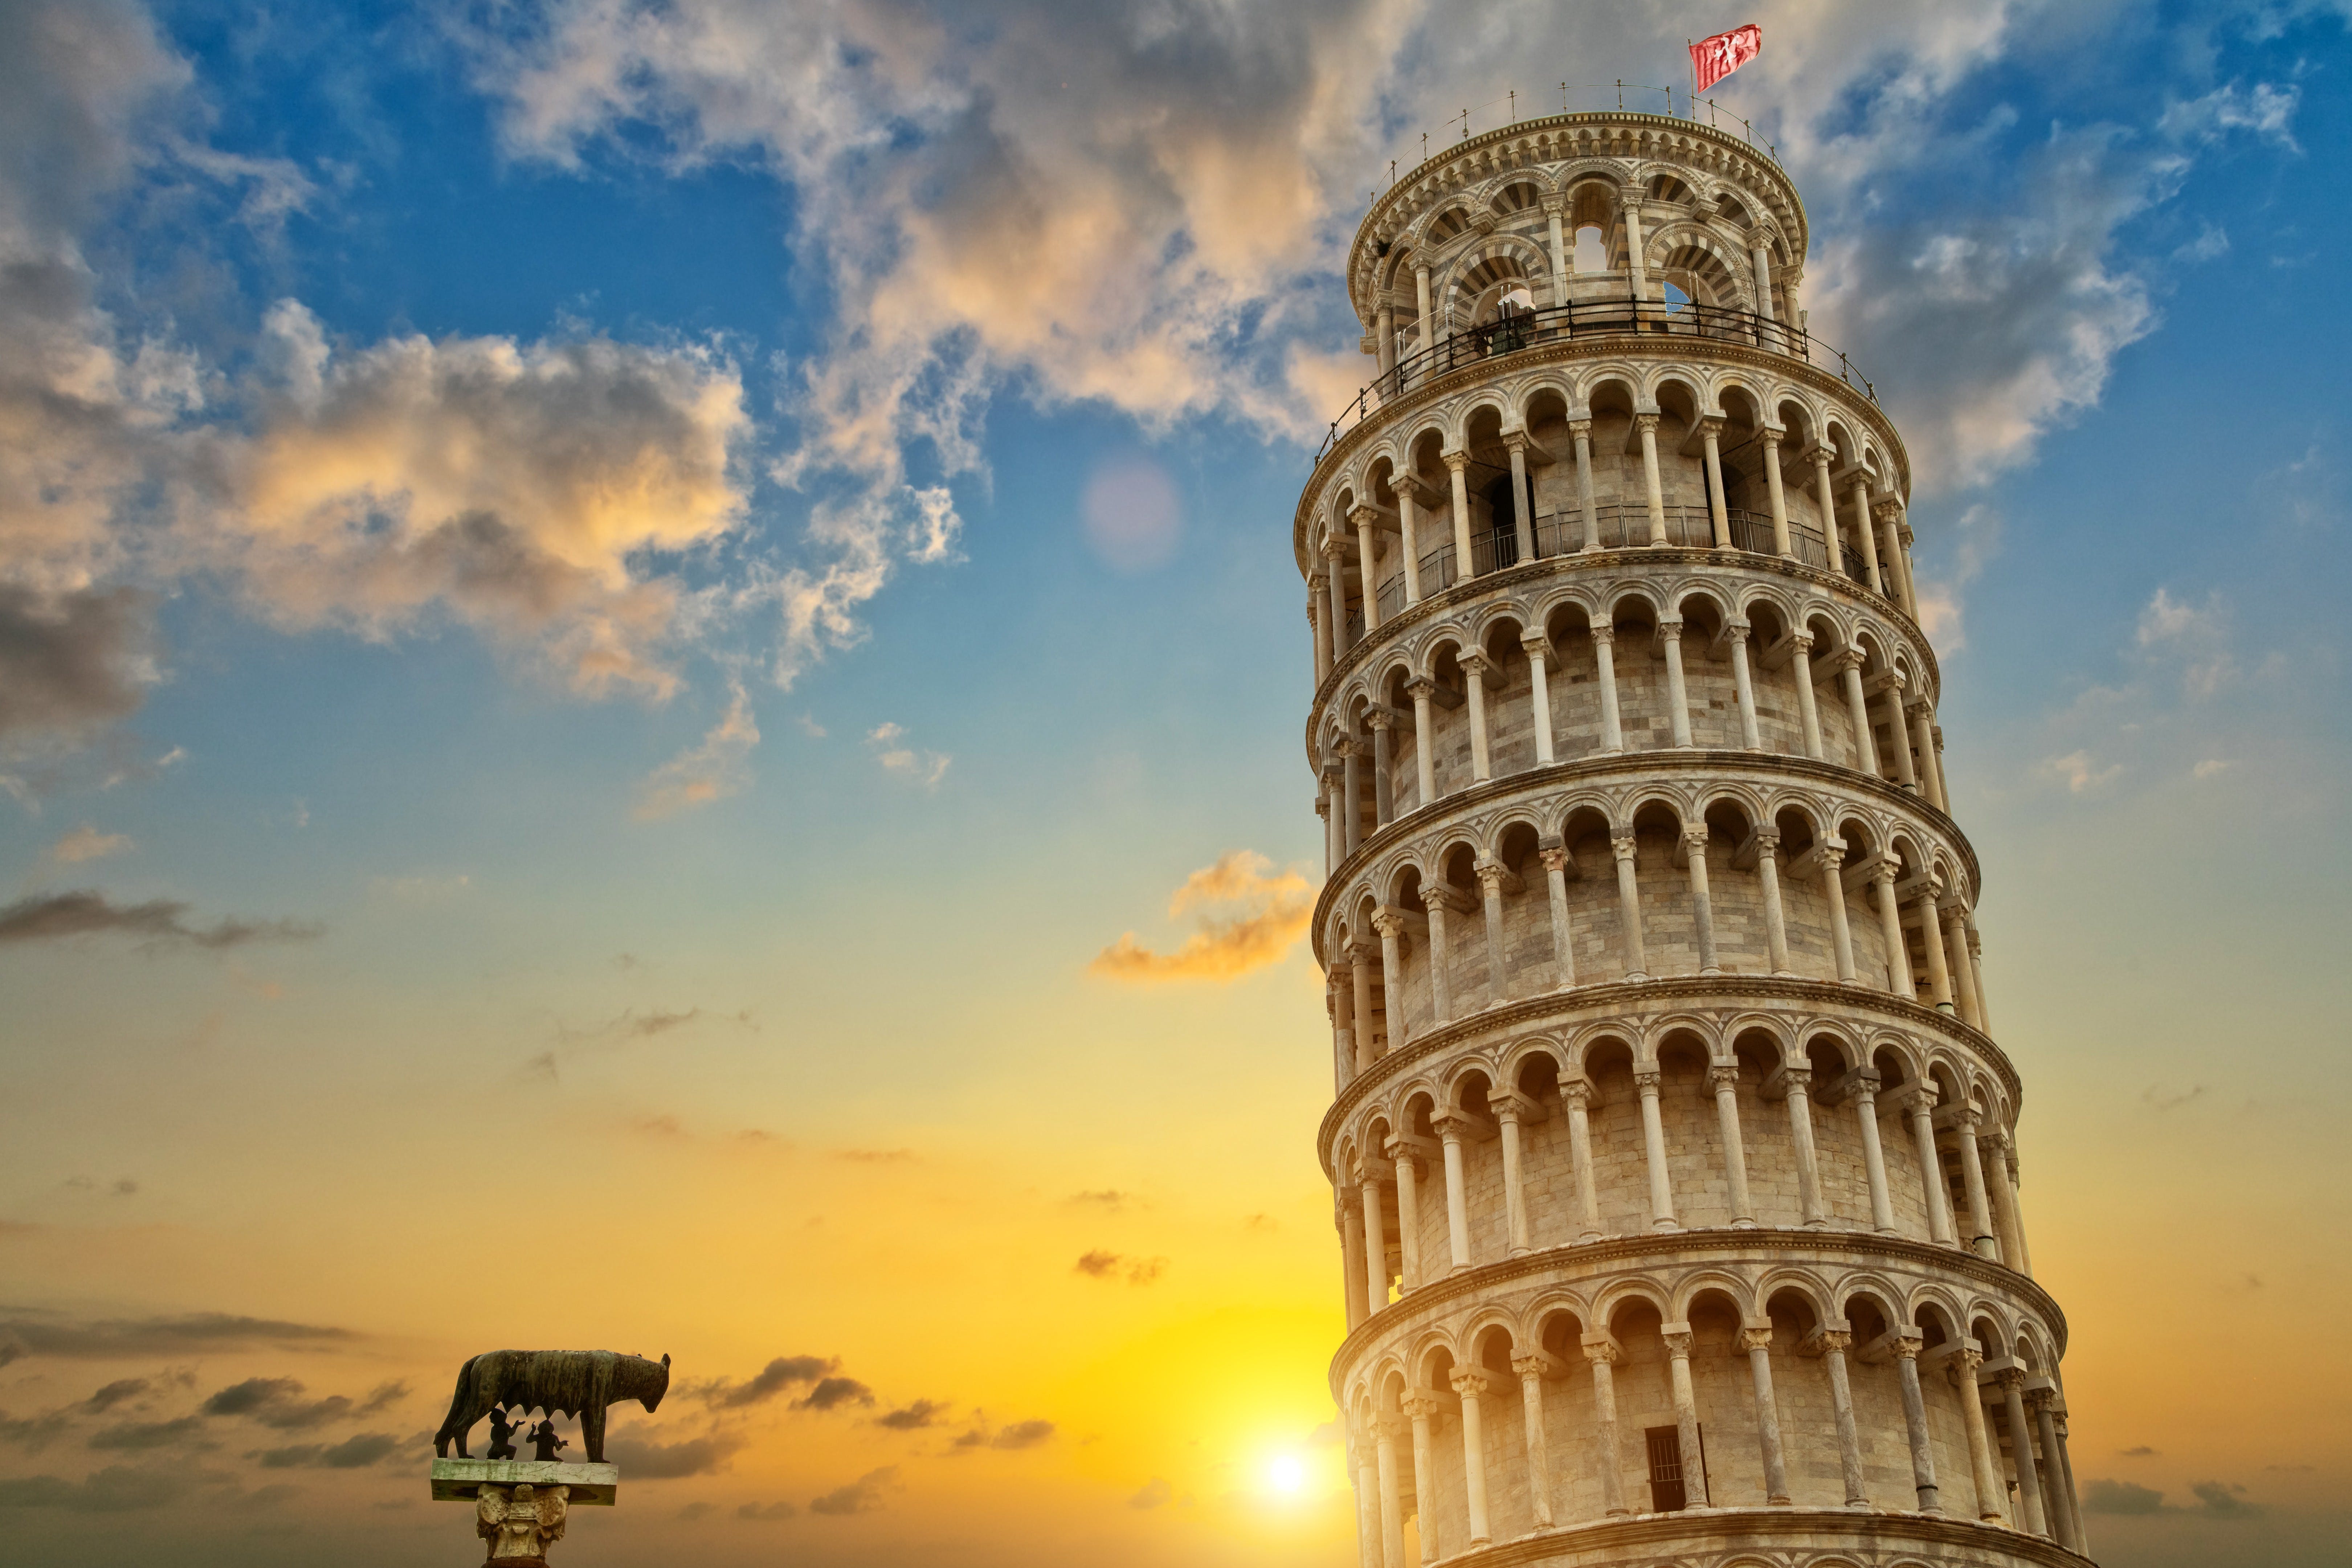 Il meglio di Pisa con visita guidata e biglietti salta fila per la Torre Pendente